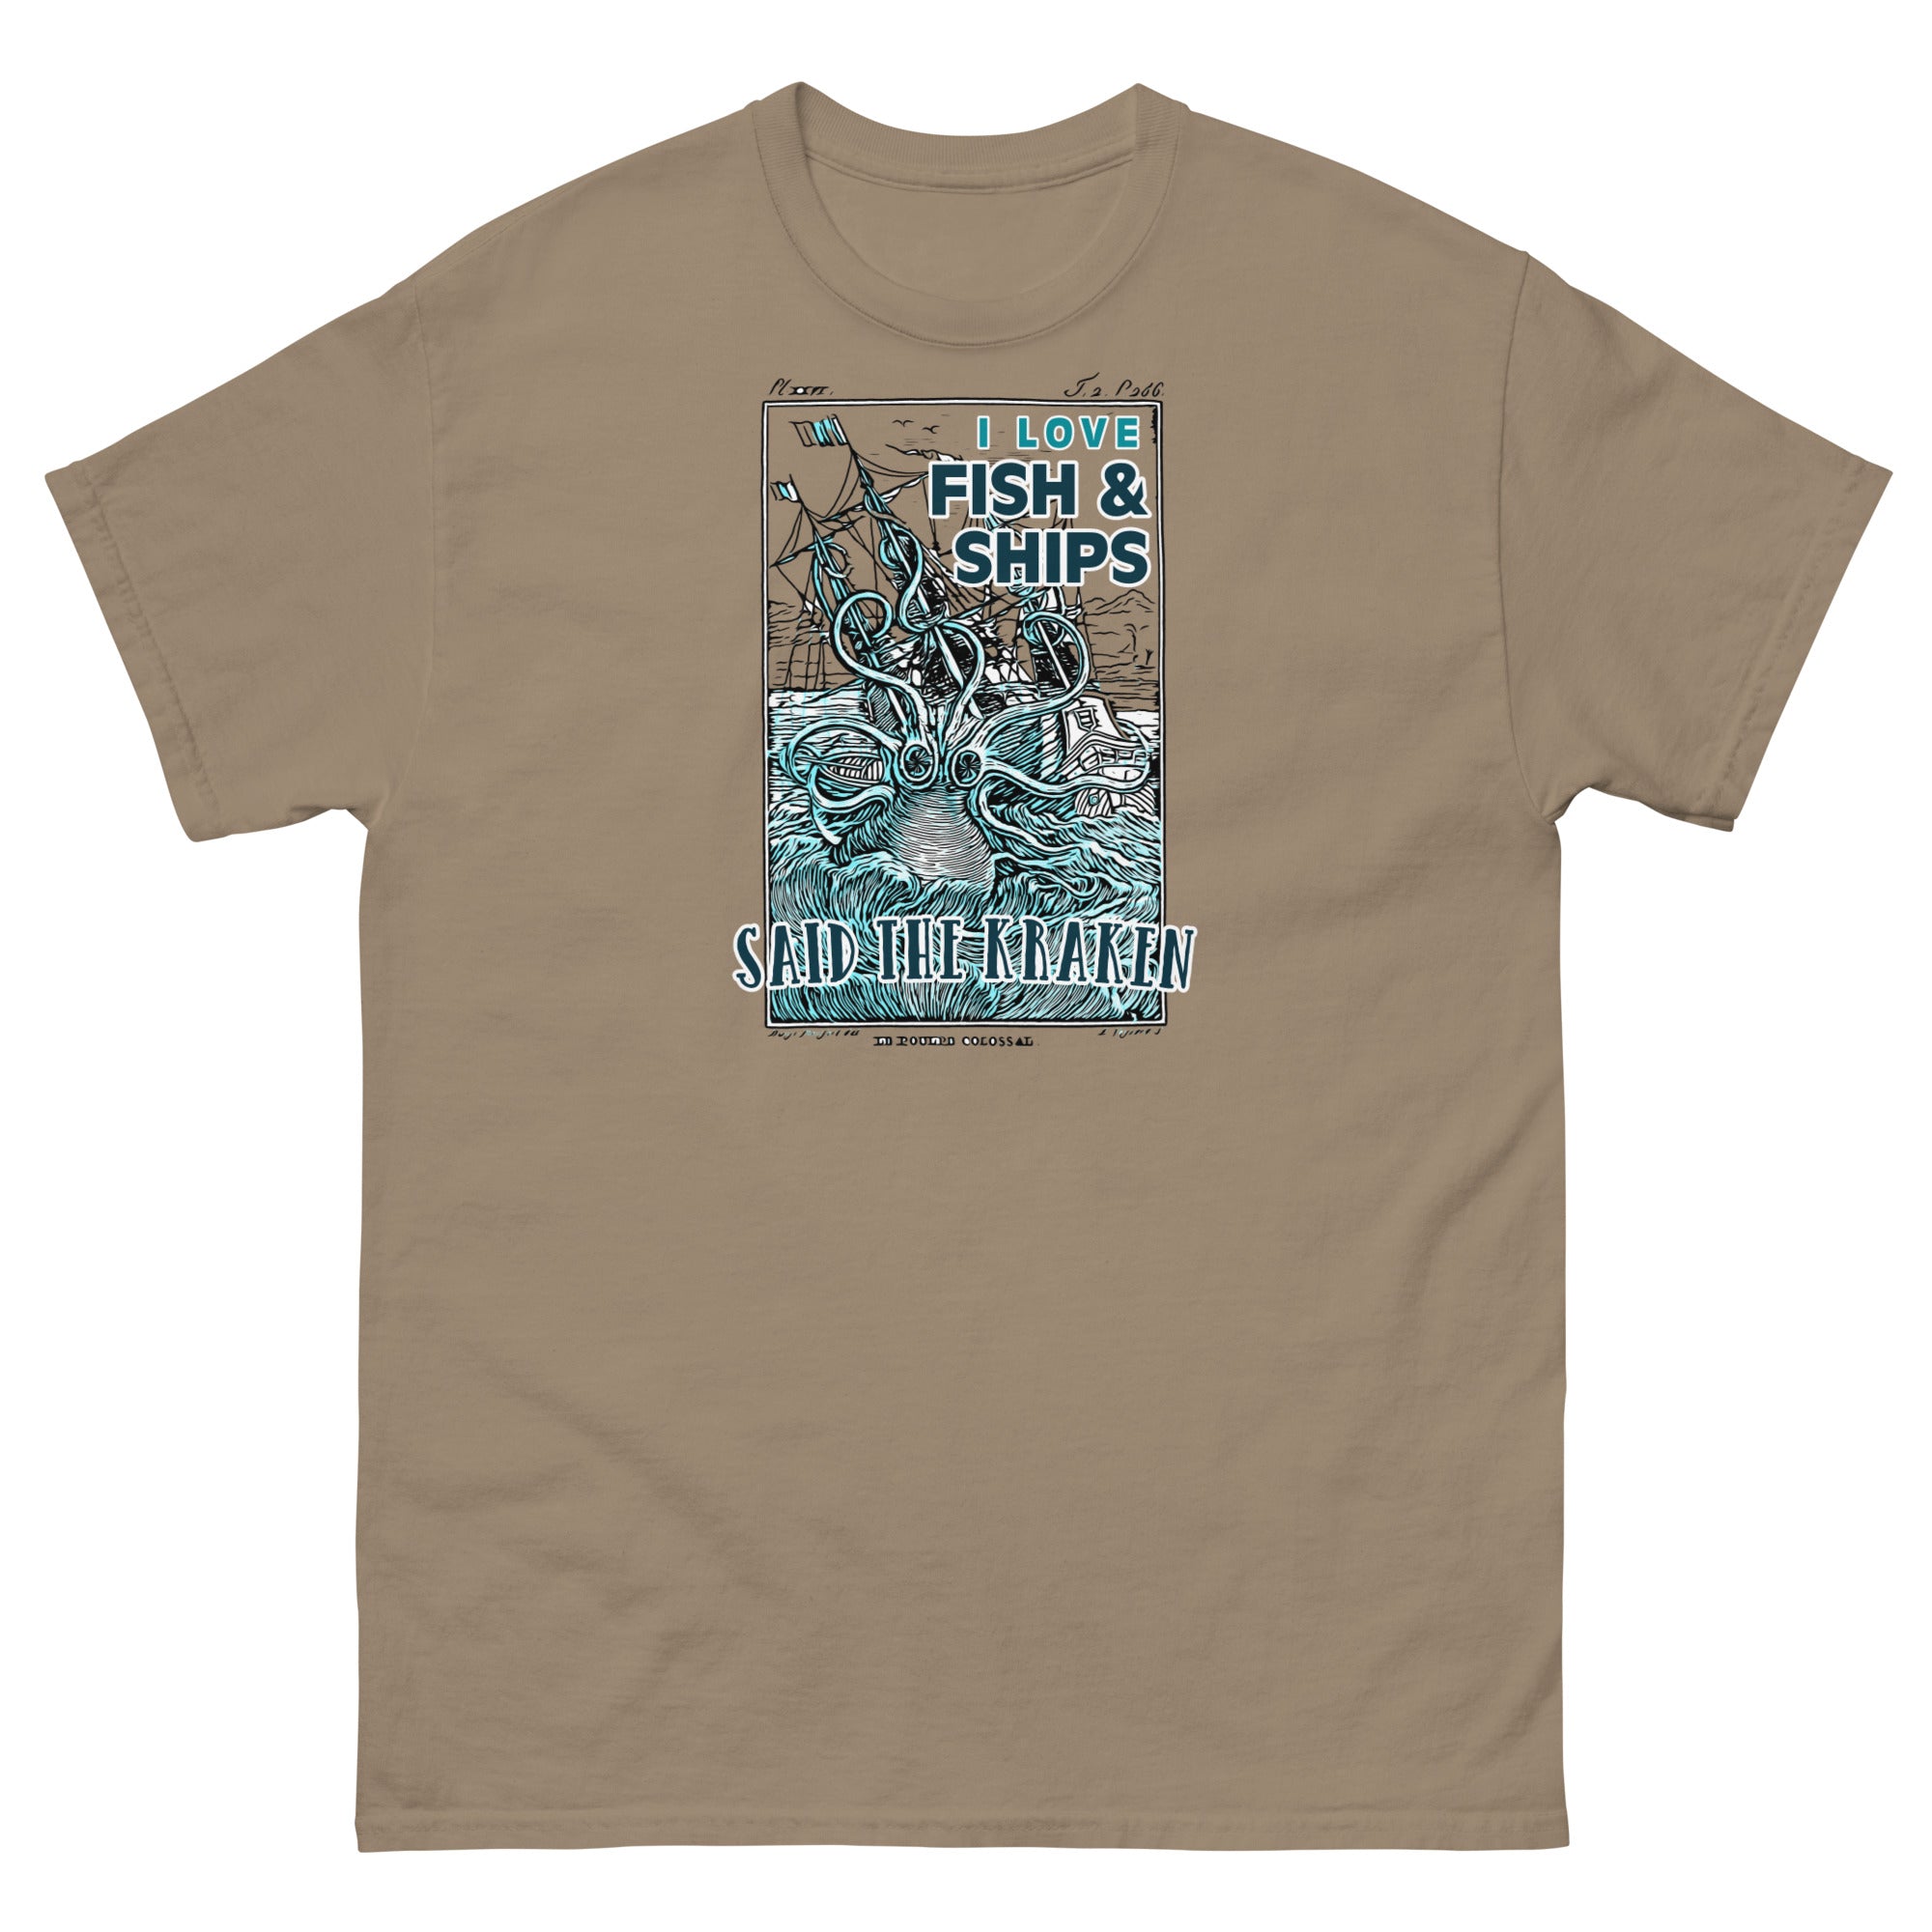 What's Kraken?' Men's T-Shirt